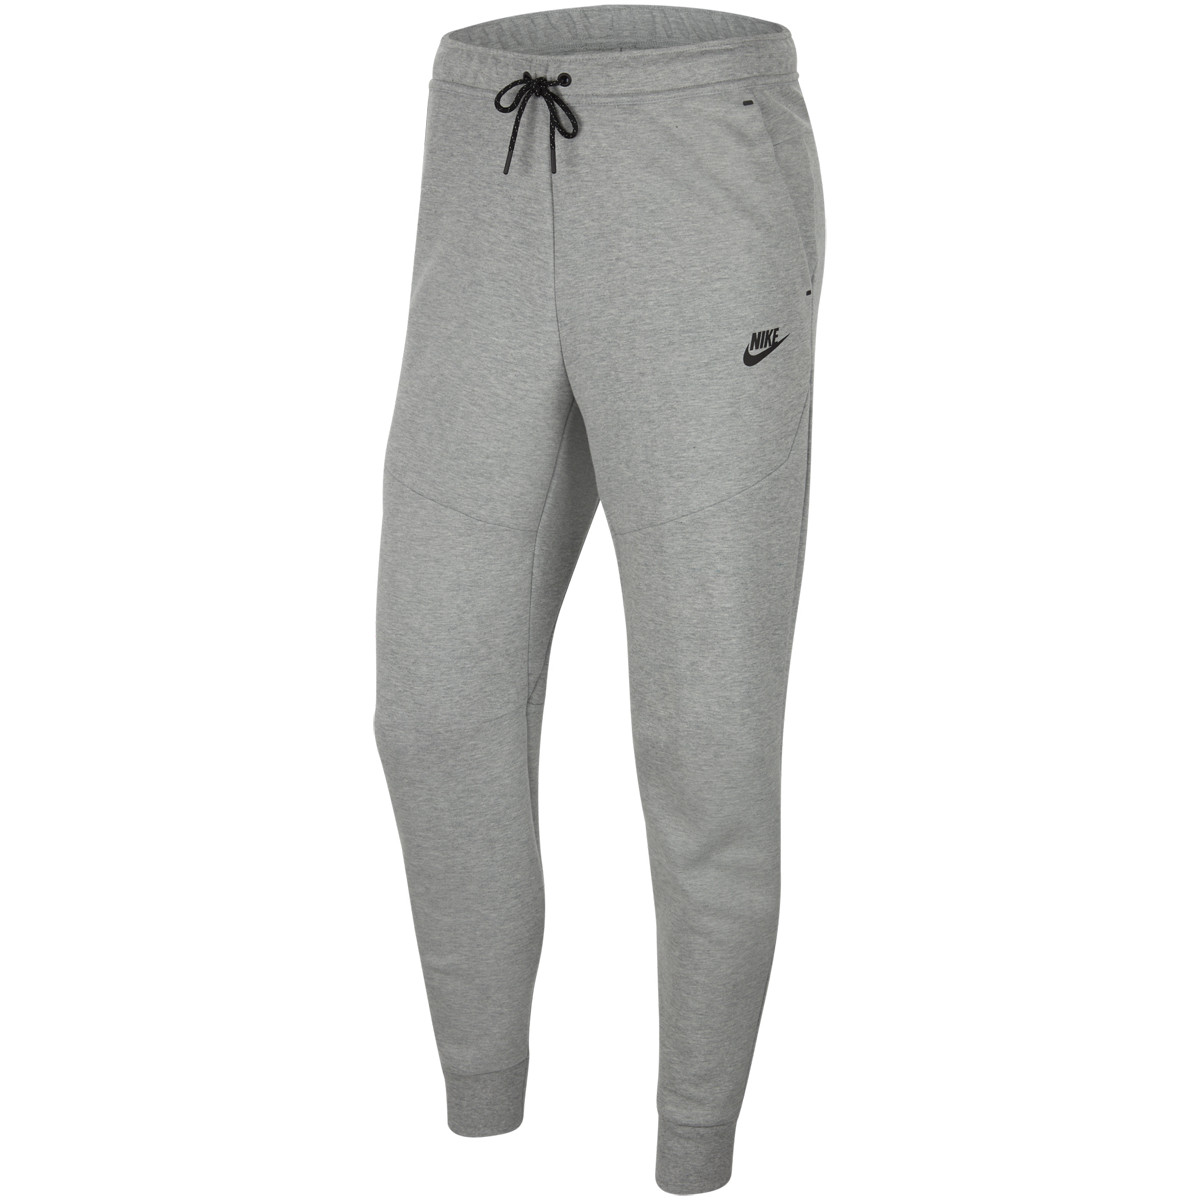 Pantalon Nike Tech Fleece Gris